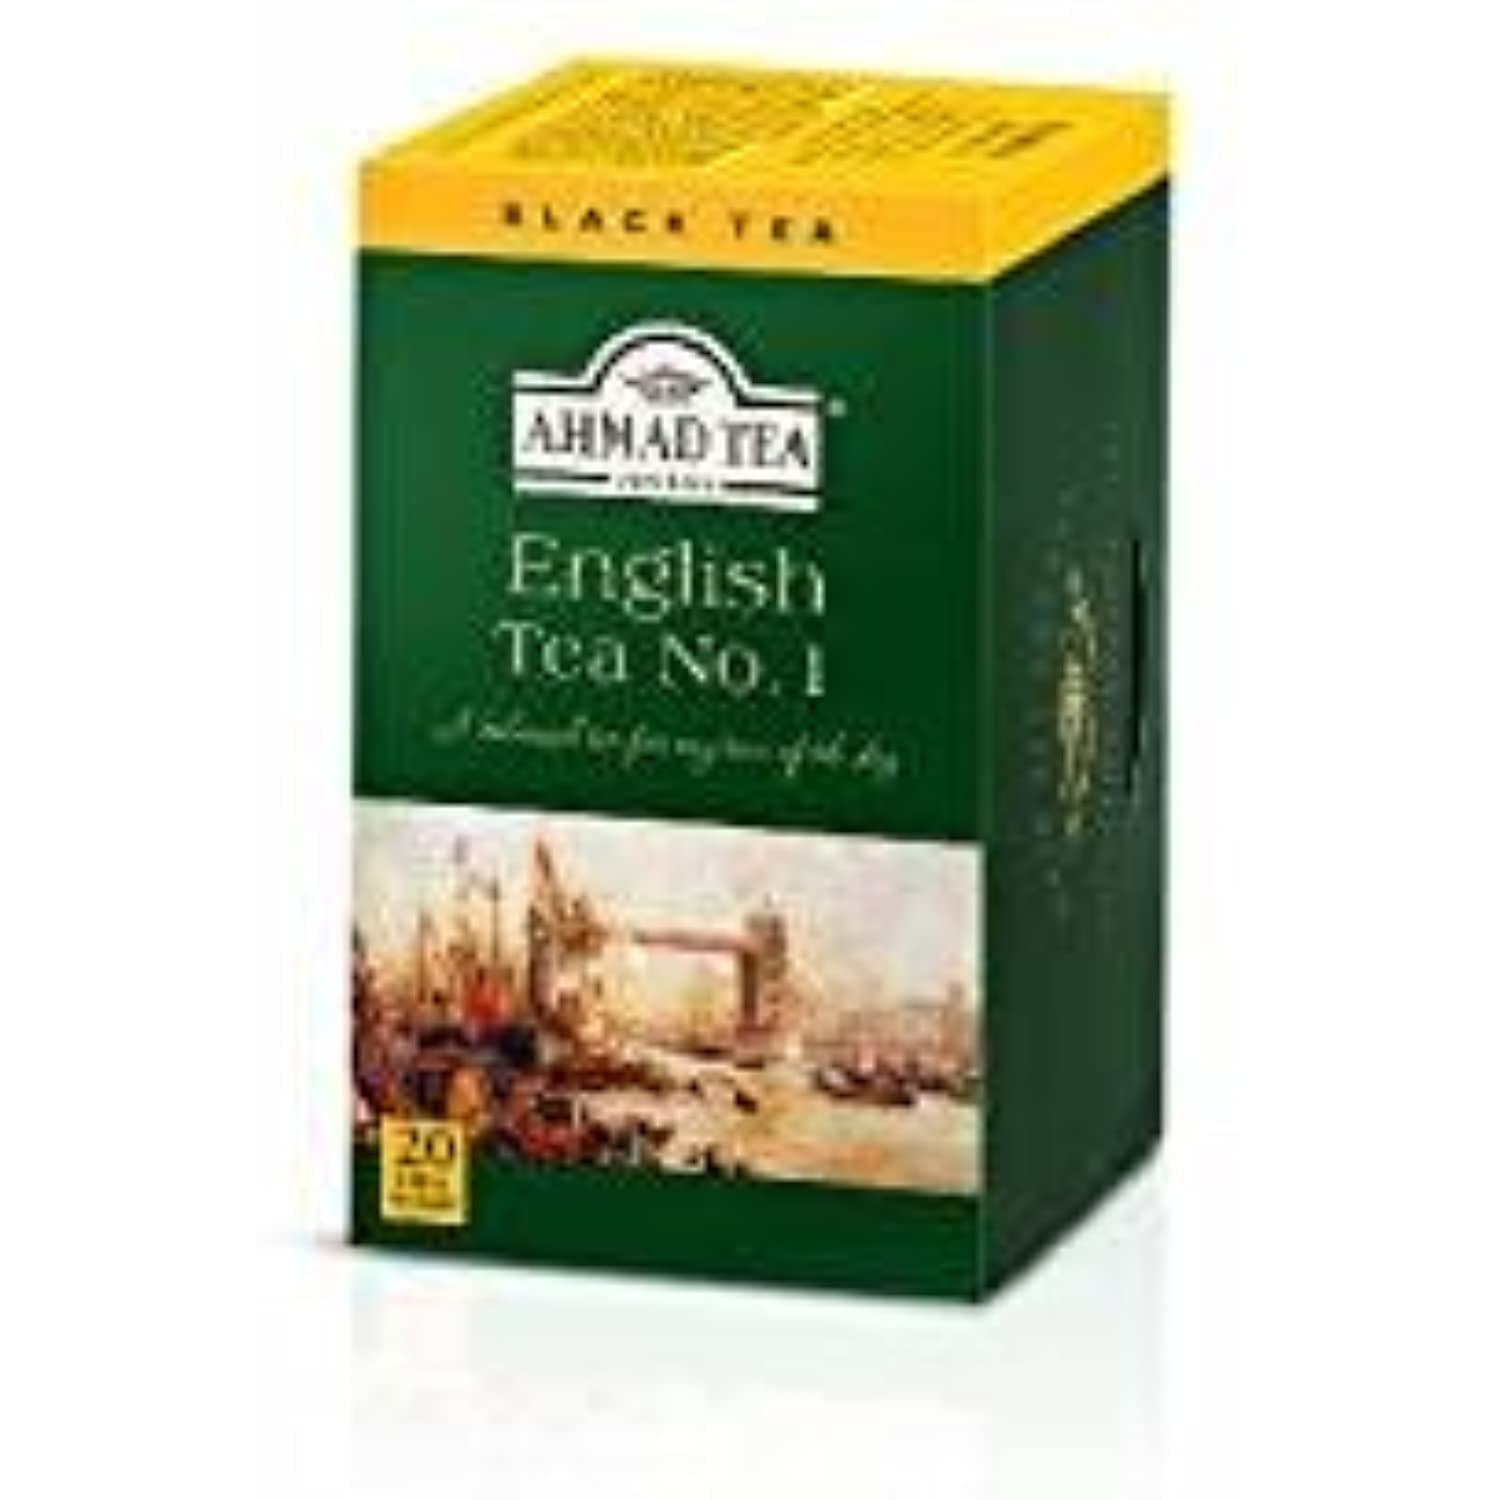 Ahmad Tea Tea, English Breakfast - 20 teabags, 1.4 oz